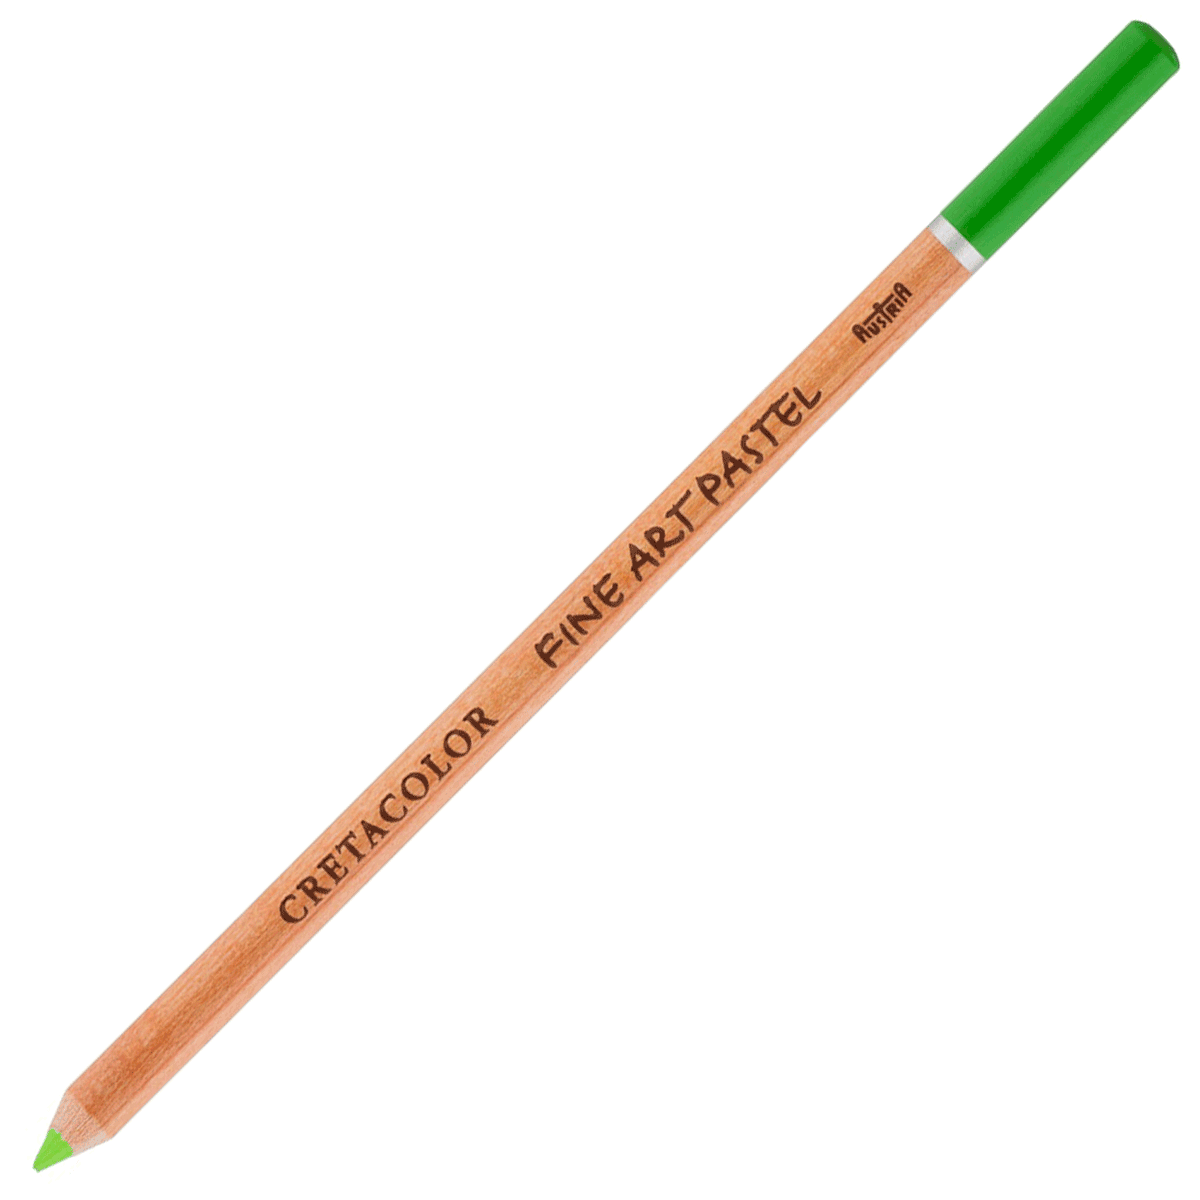 Cretacolor Pastel Pencil - Pea Green - 471-87